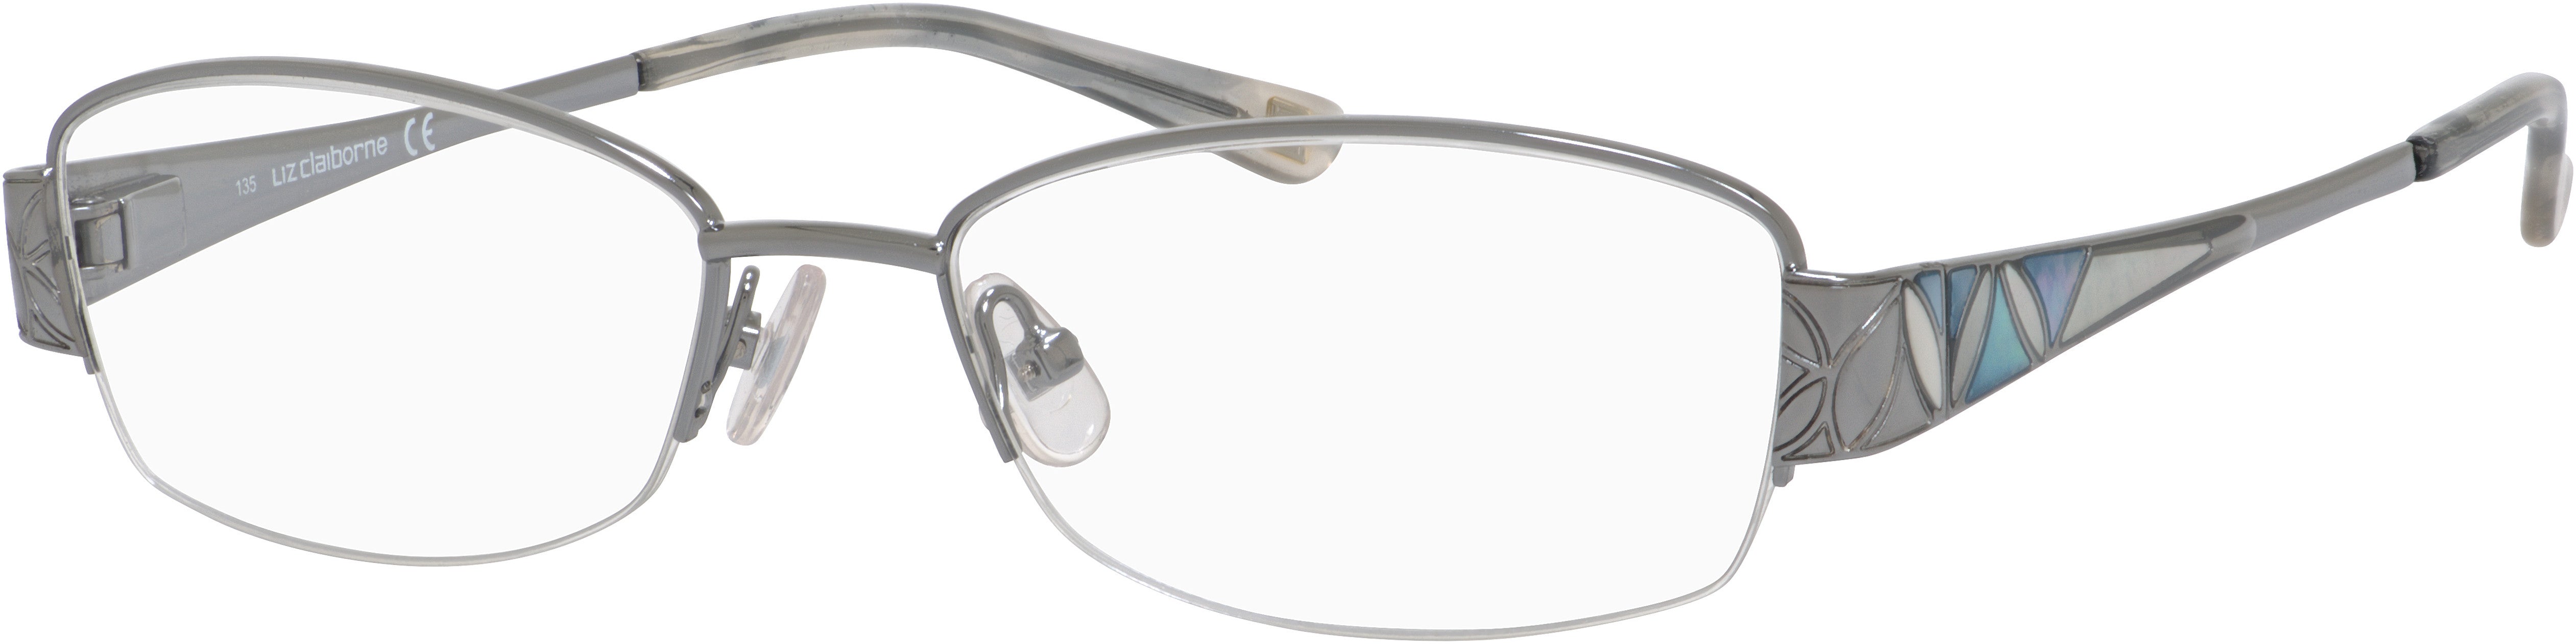  Liz Claiborne 319 Rectangular Eyeglasses 06LB-06LB  Ruthenium (00 Demo Lens)